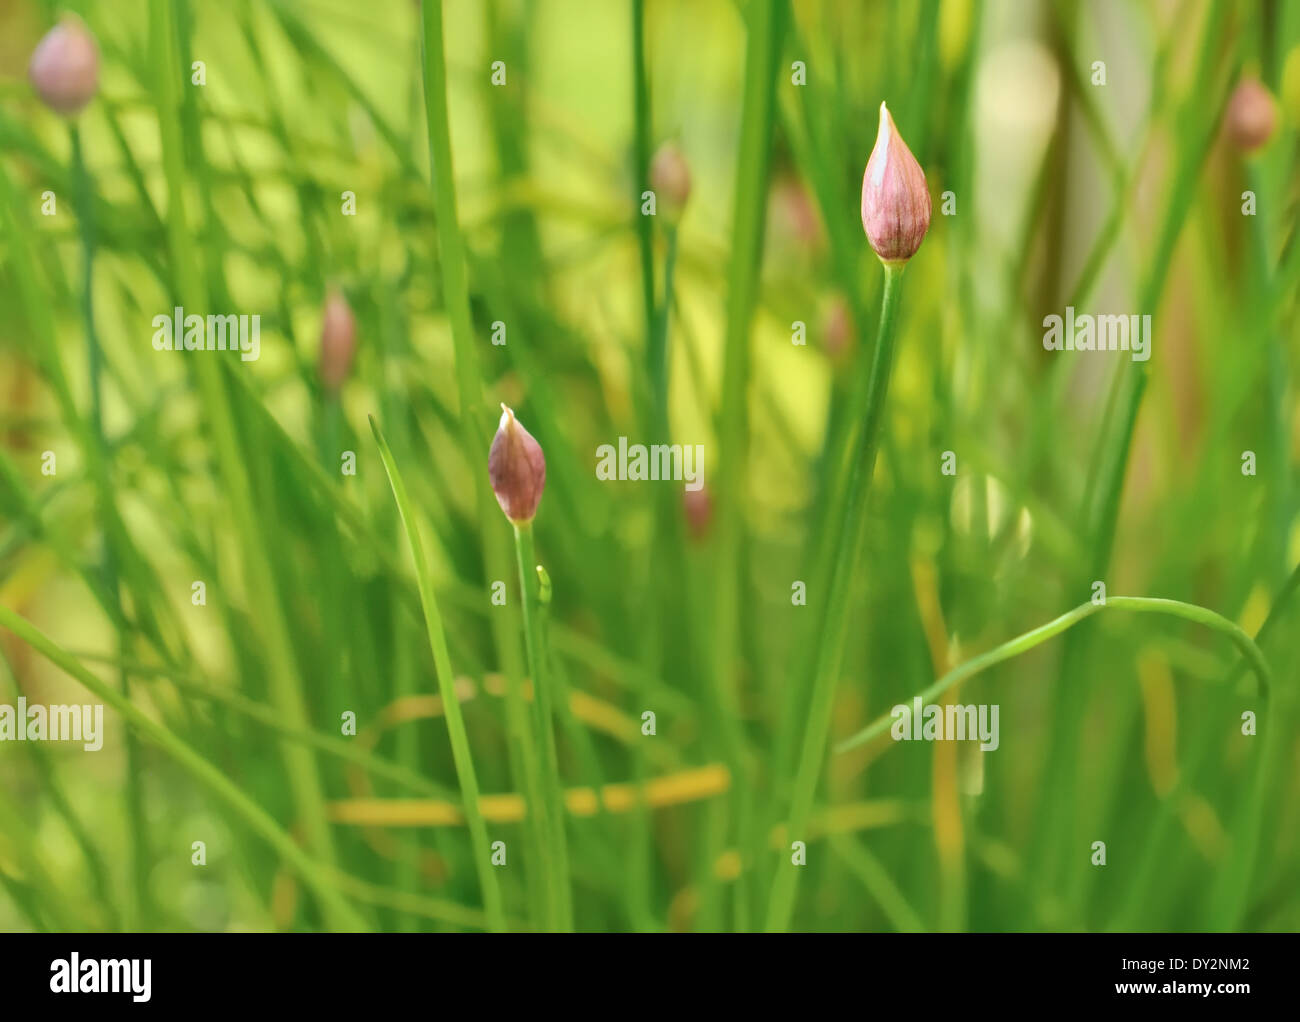 Chiudere su viola germogli di erba cipollina in giardino Foto Stock